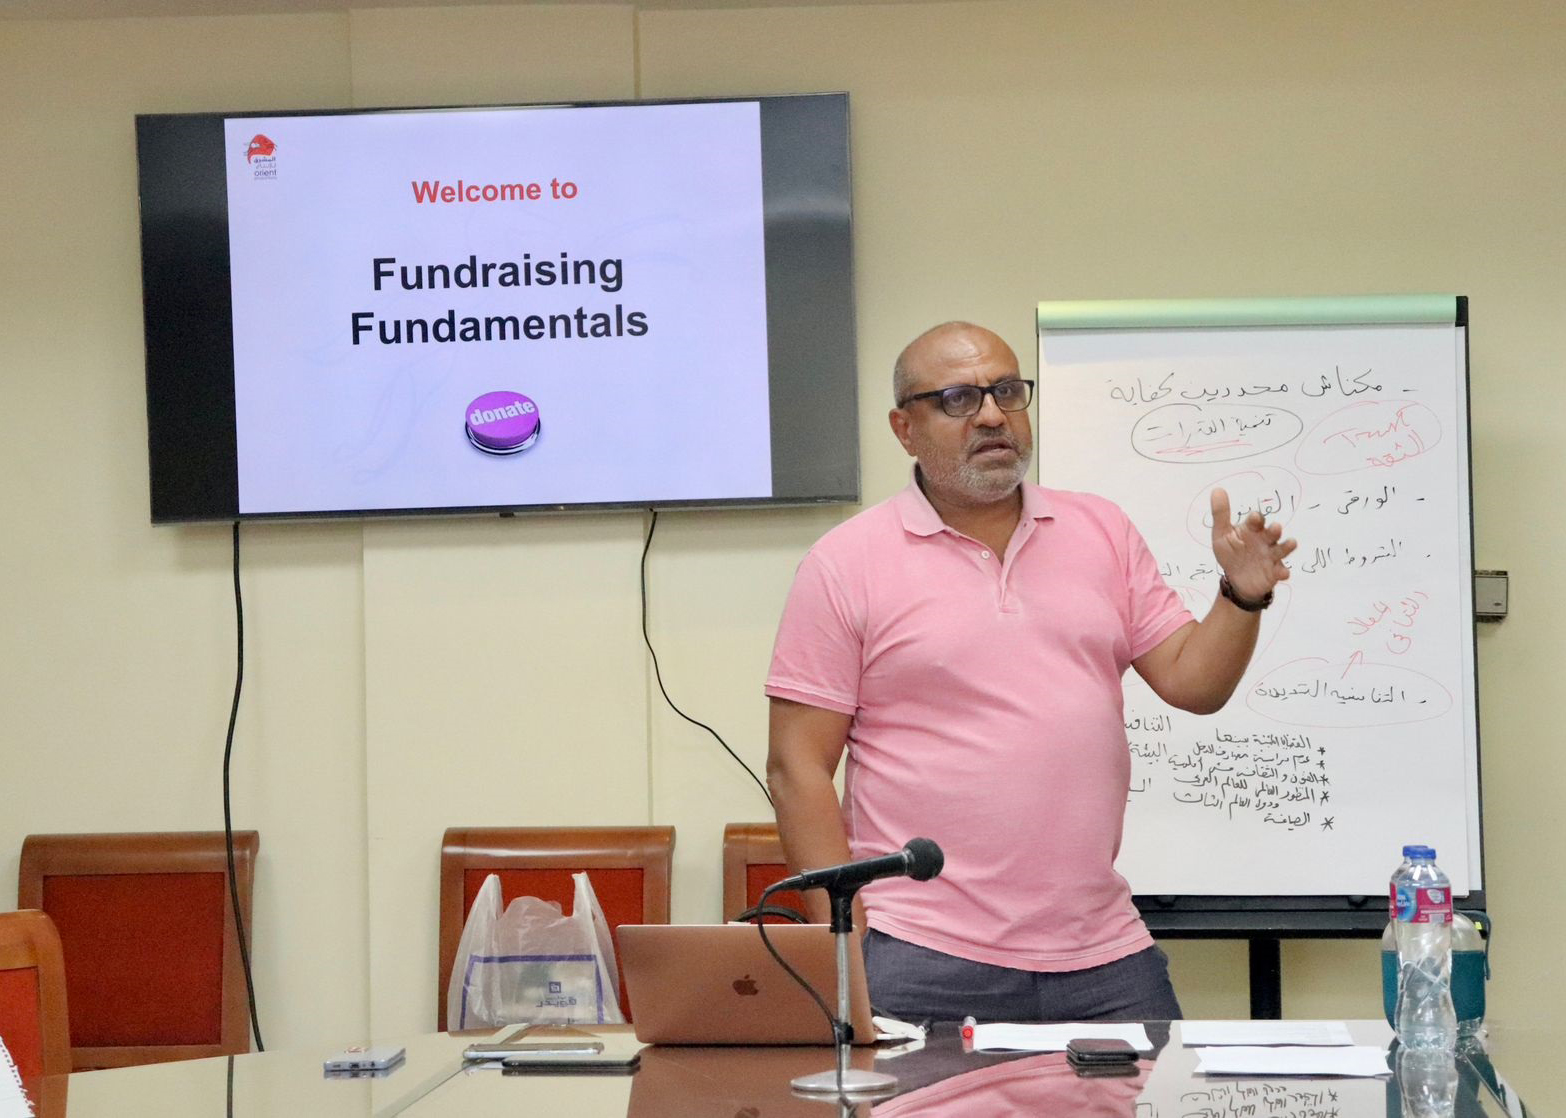 ثلاثة قواعد ثابتة للبحث عن التمويل في ورشة تنمية مصادر التمويل للمخرج أحمد العطار